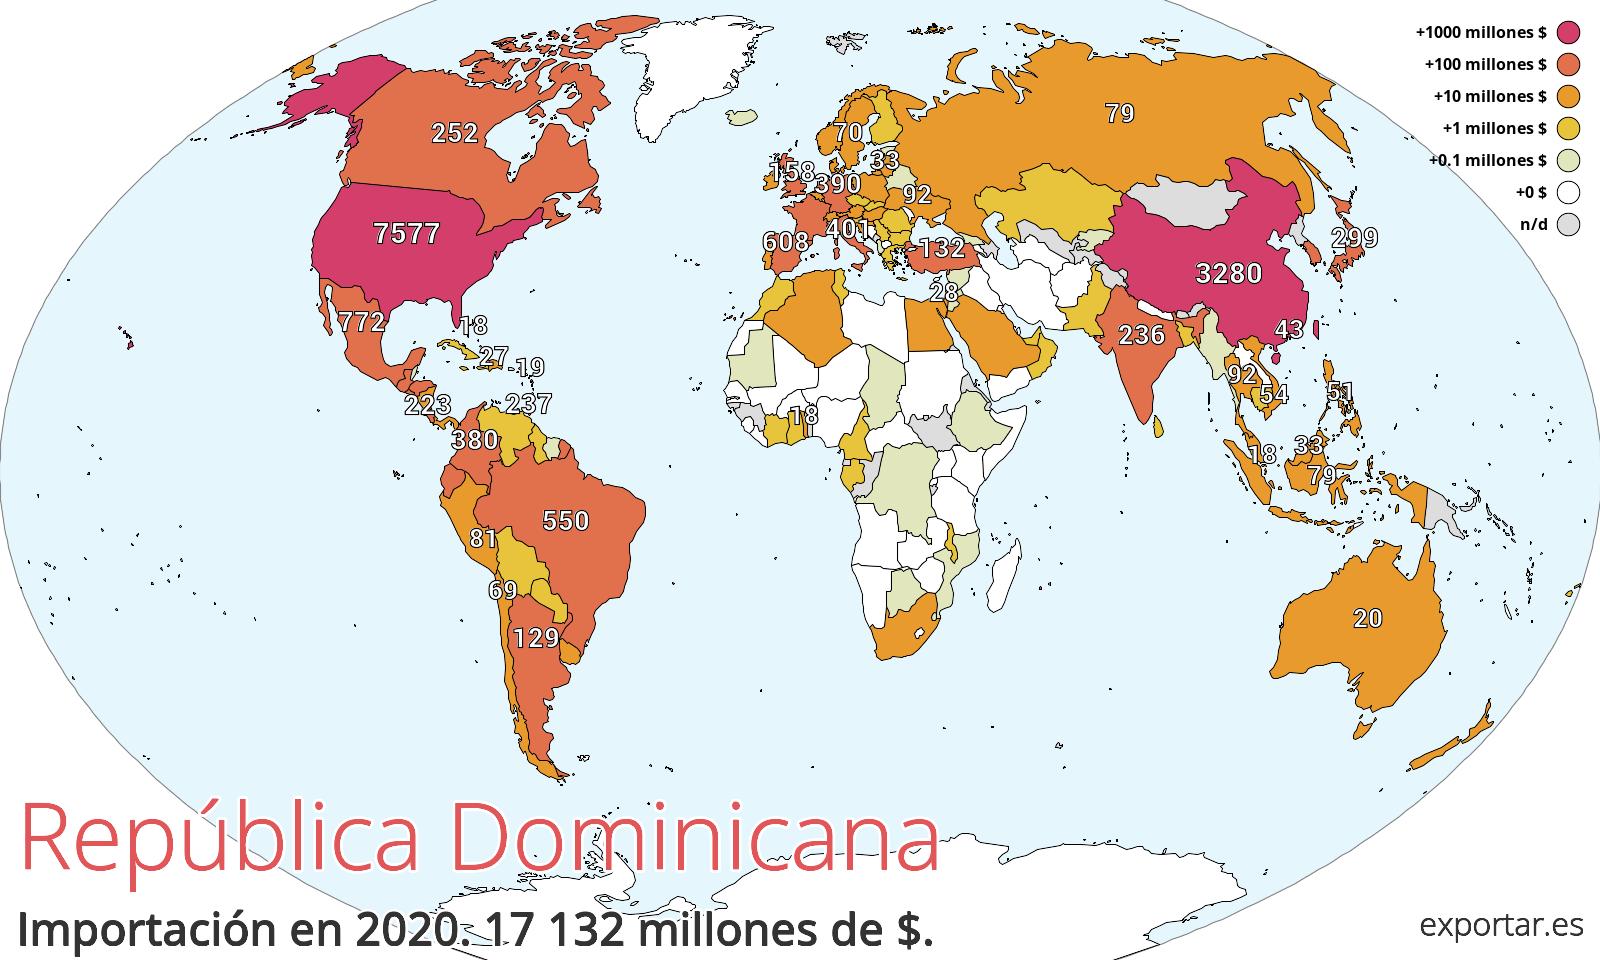 Mapa de importación de República Dominicana en 2020.